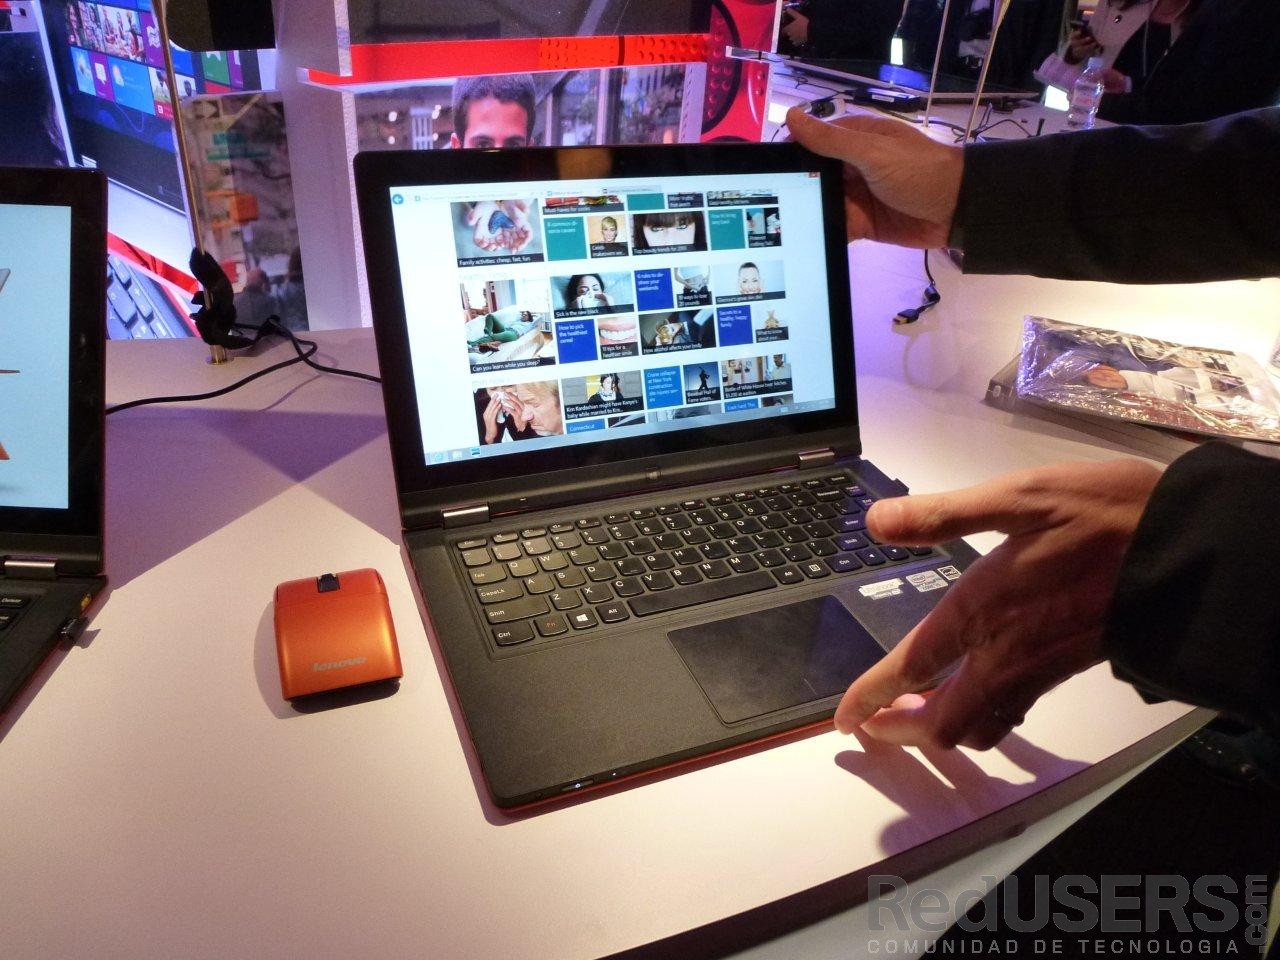 La IdeaPad Yoga 11S, otra de las atracciones del booth de Lenovo